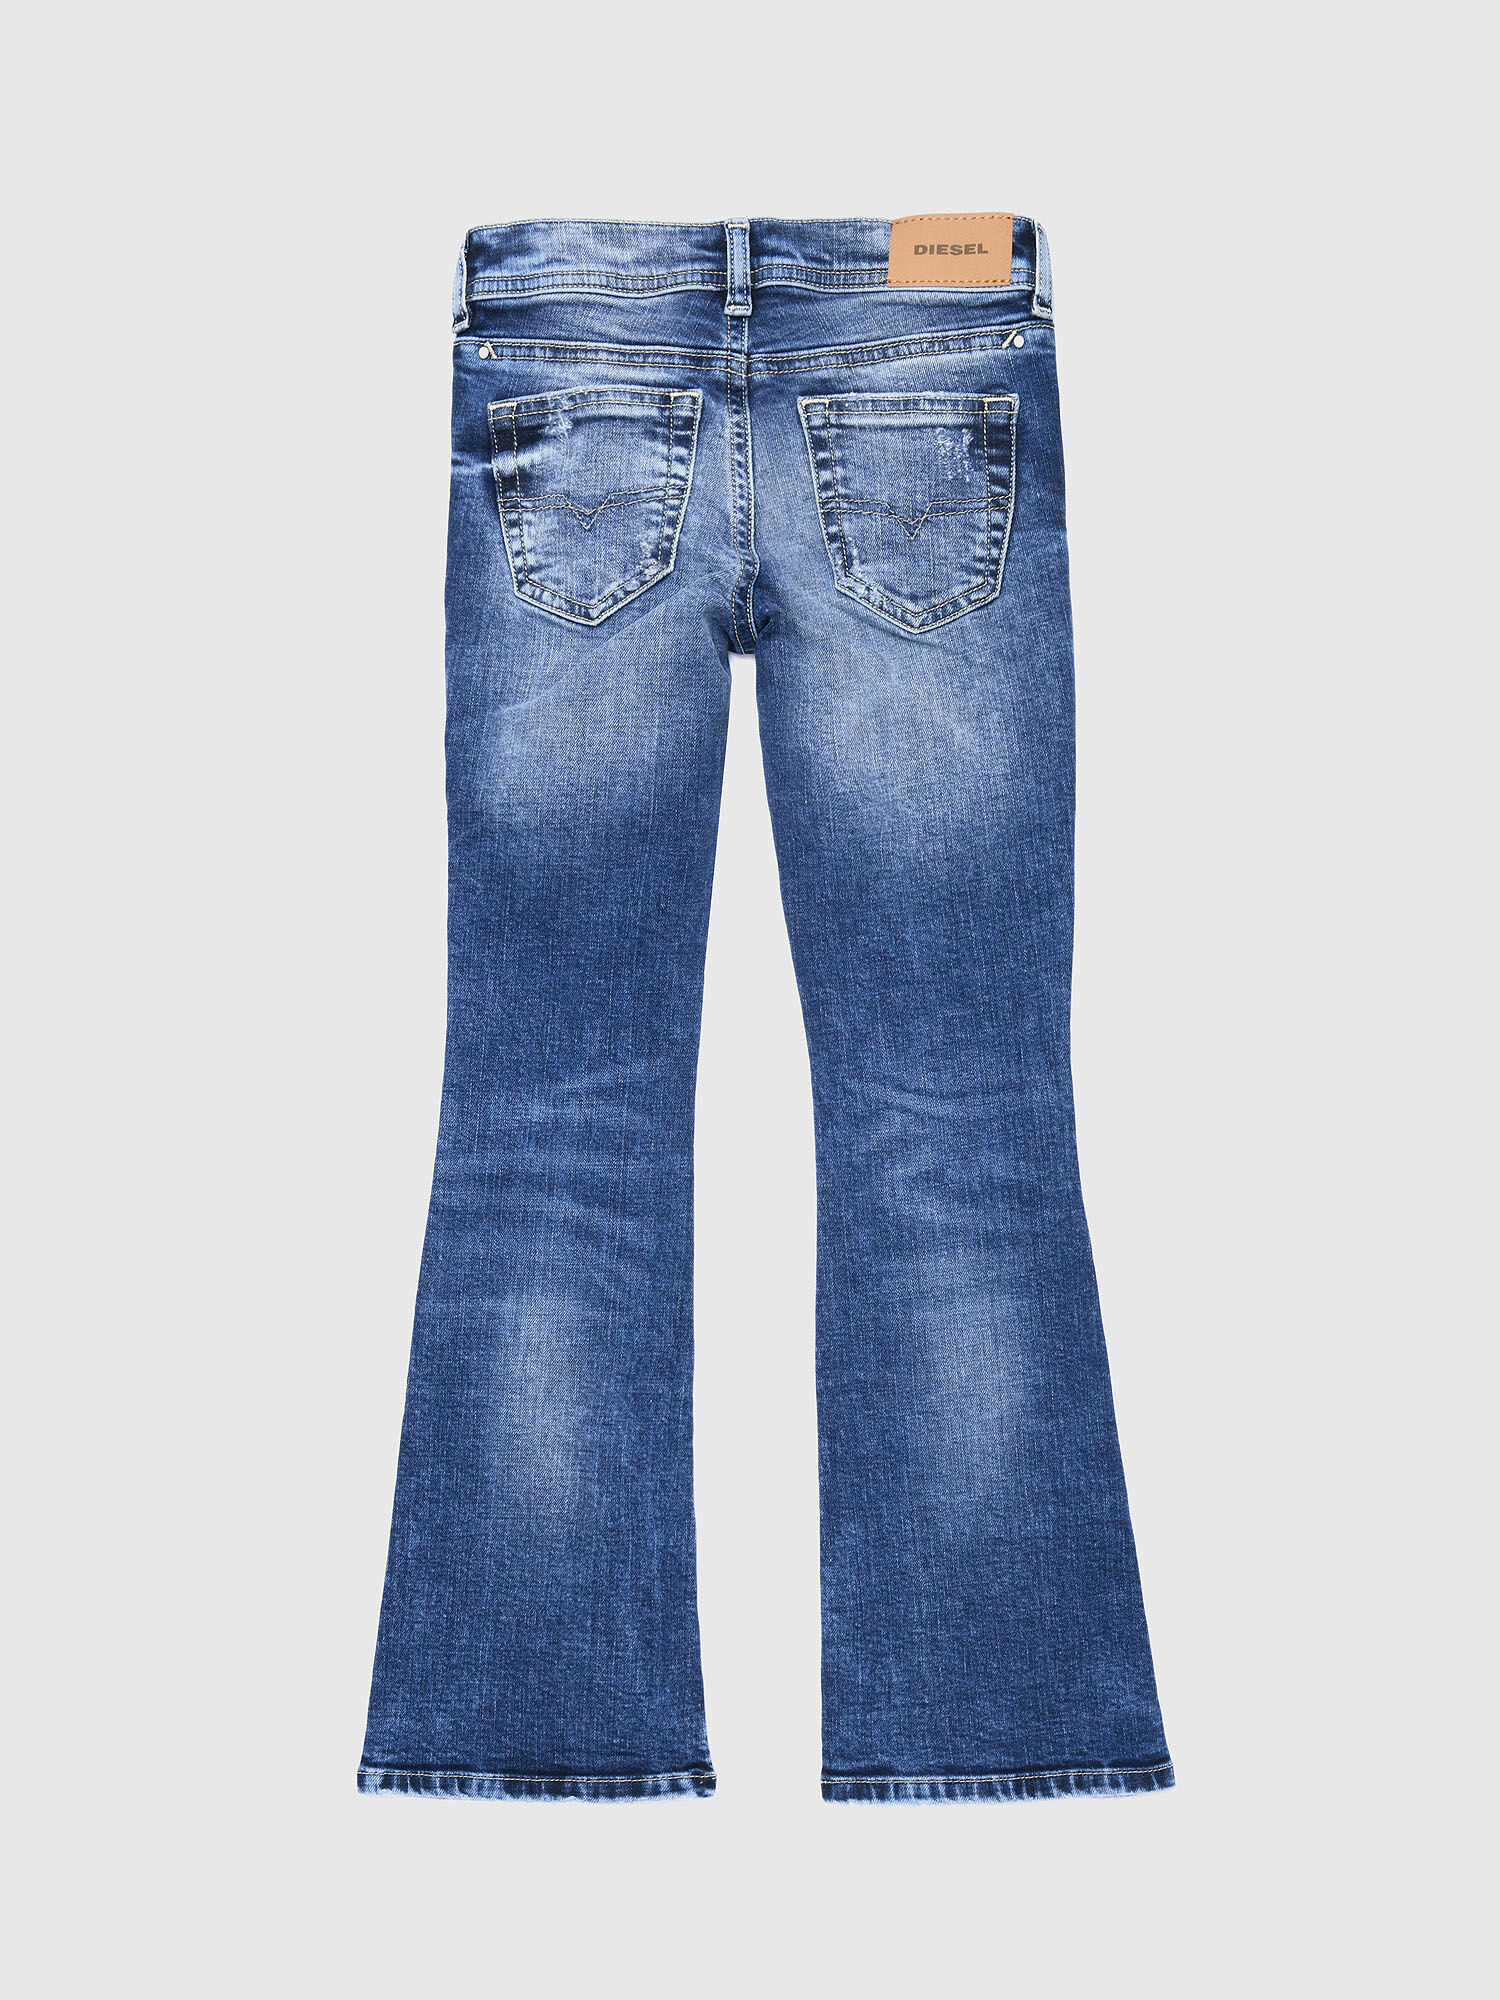 colete jeans feminino colcci